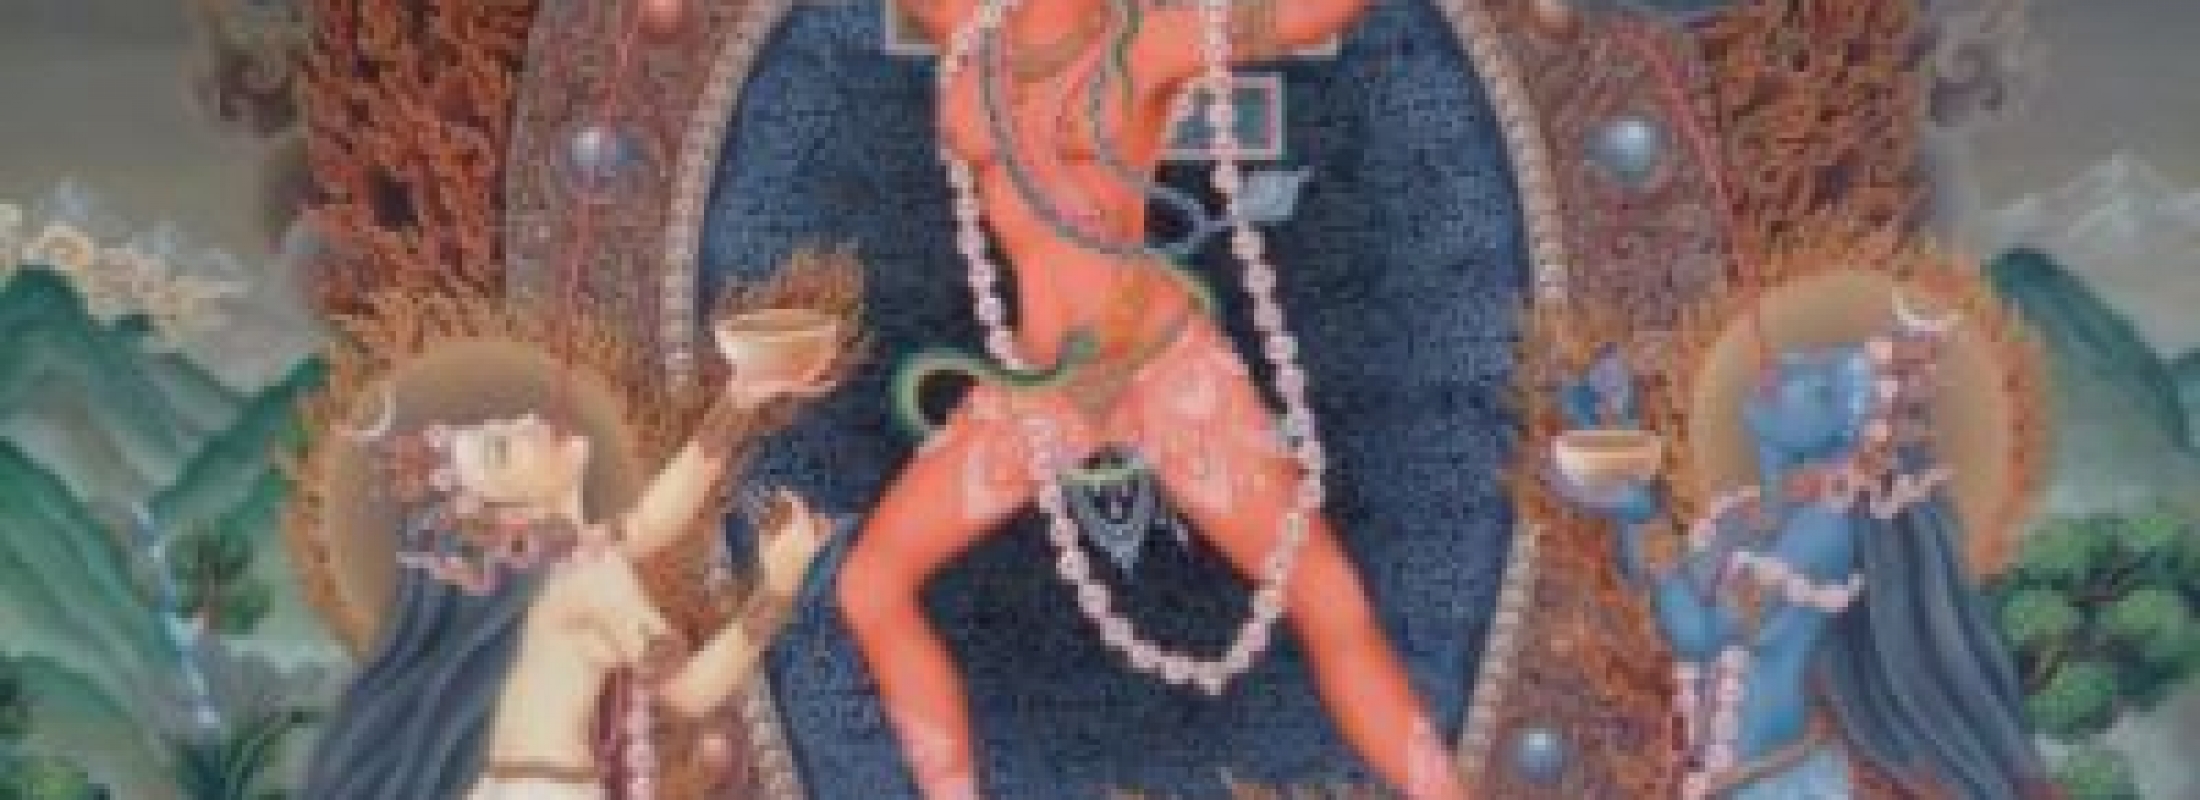 Чиннамаста, богиня Чиннамаста, энергетический канал (инициация)